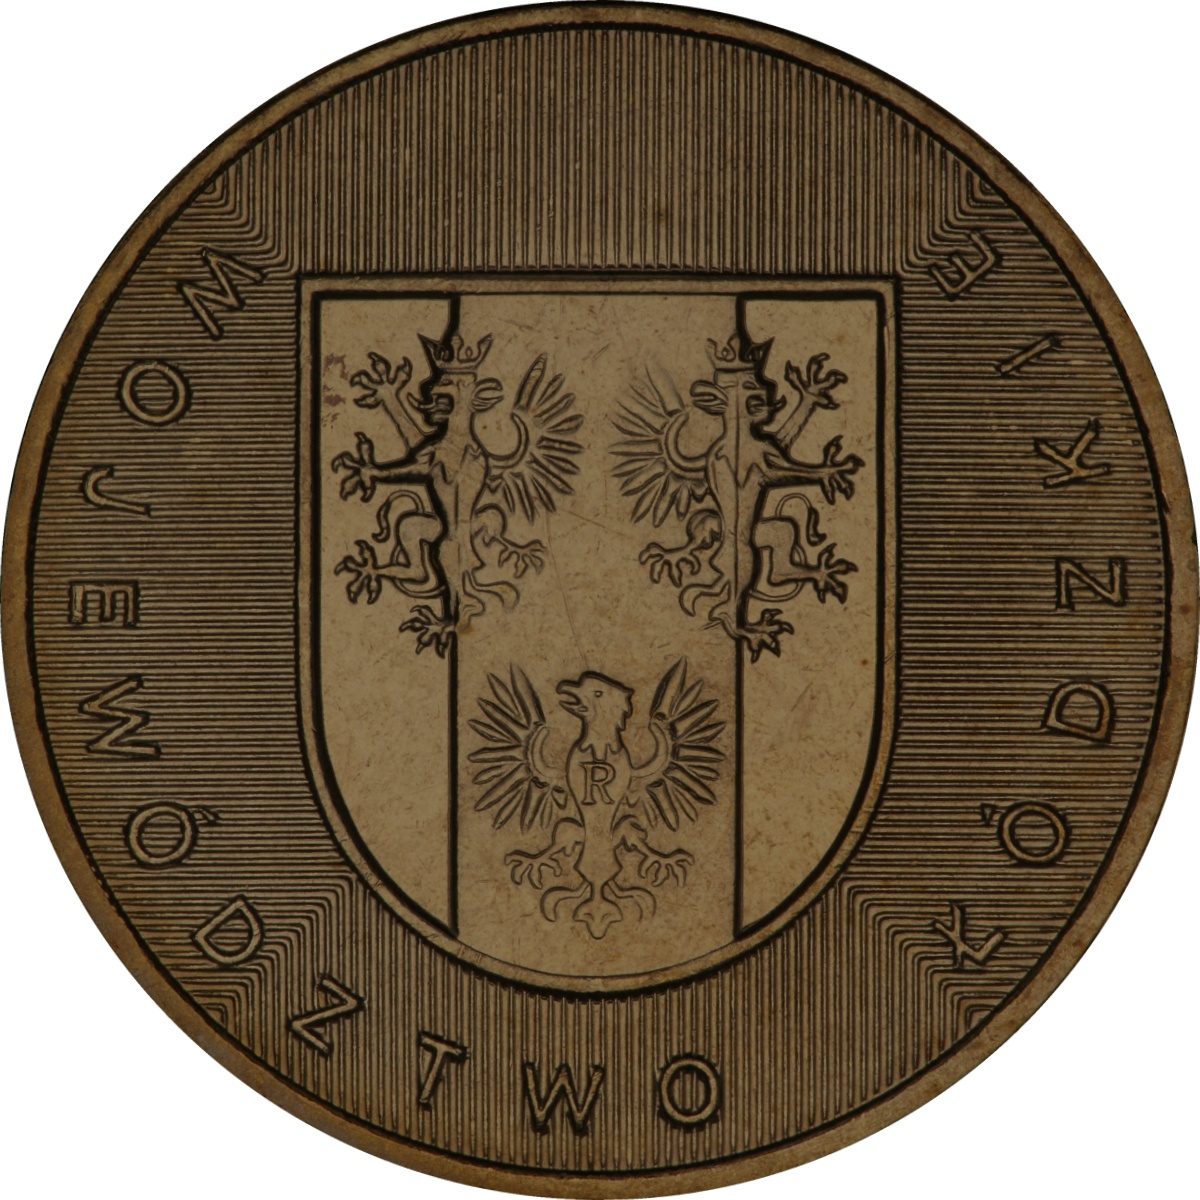 2zl-okolicznosciowe-wojewodztwo-lodzkie-rewers-monety